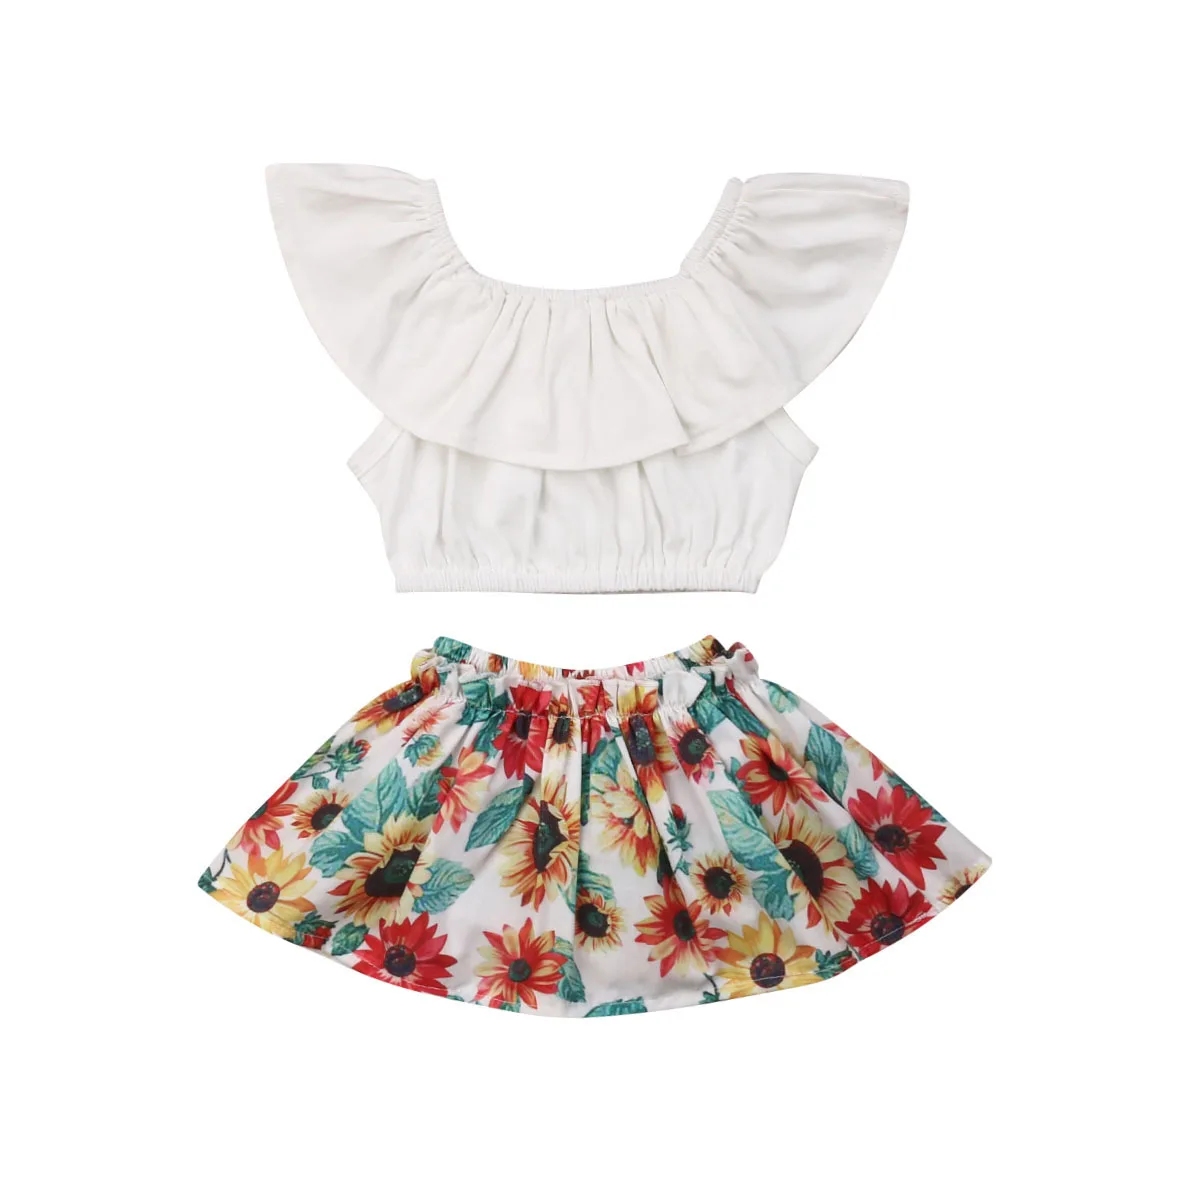 Pudcoco лето для новорожденных Одежда для маленьких девочек комплект принцессы футболки + Пышная юбка танцевальная одежда для вечеринки; 2019